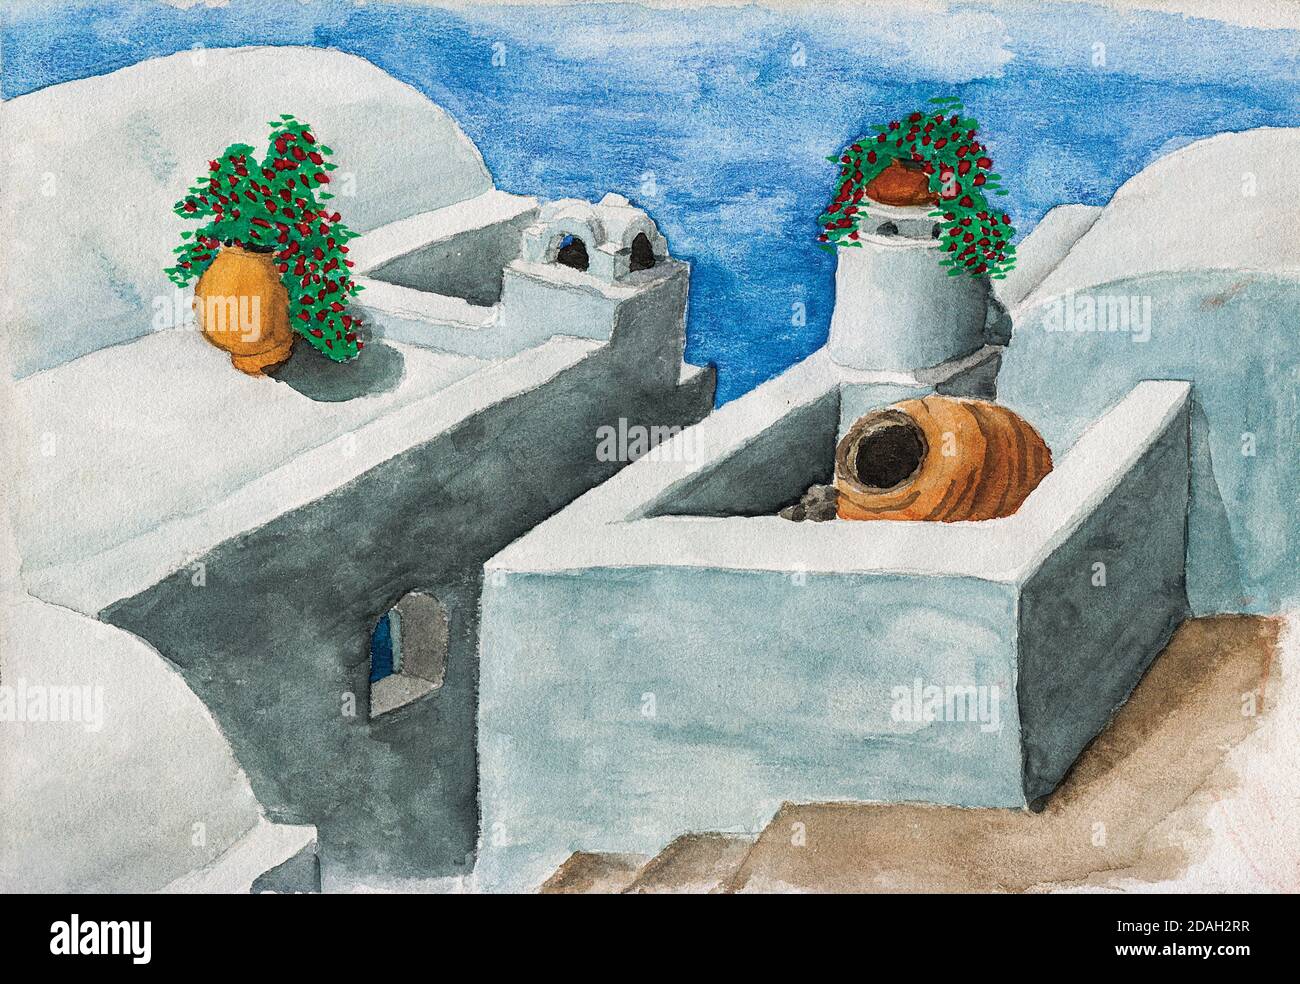 Toits blanchis à la chaux avec des fleurs et une allée provenant de maisons typiques de Santorini. Une île volcanique dans la mer Égée, dans le sud de la Grèce. Aquarelle. Banque D'Images